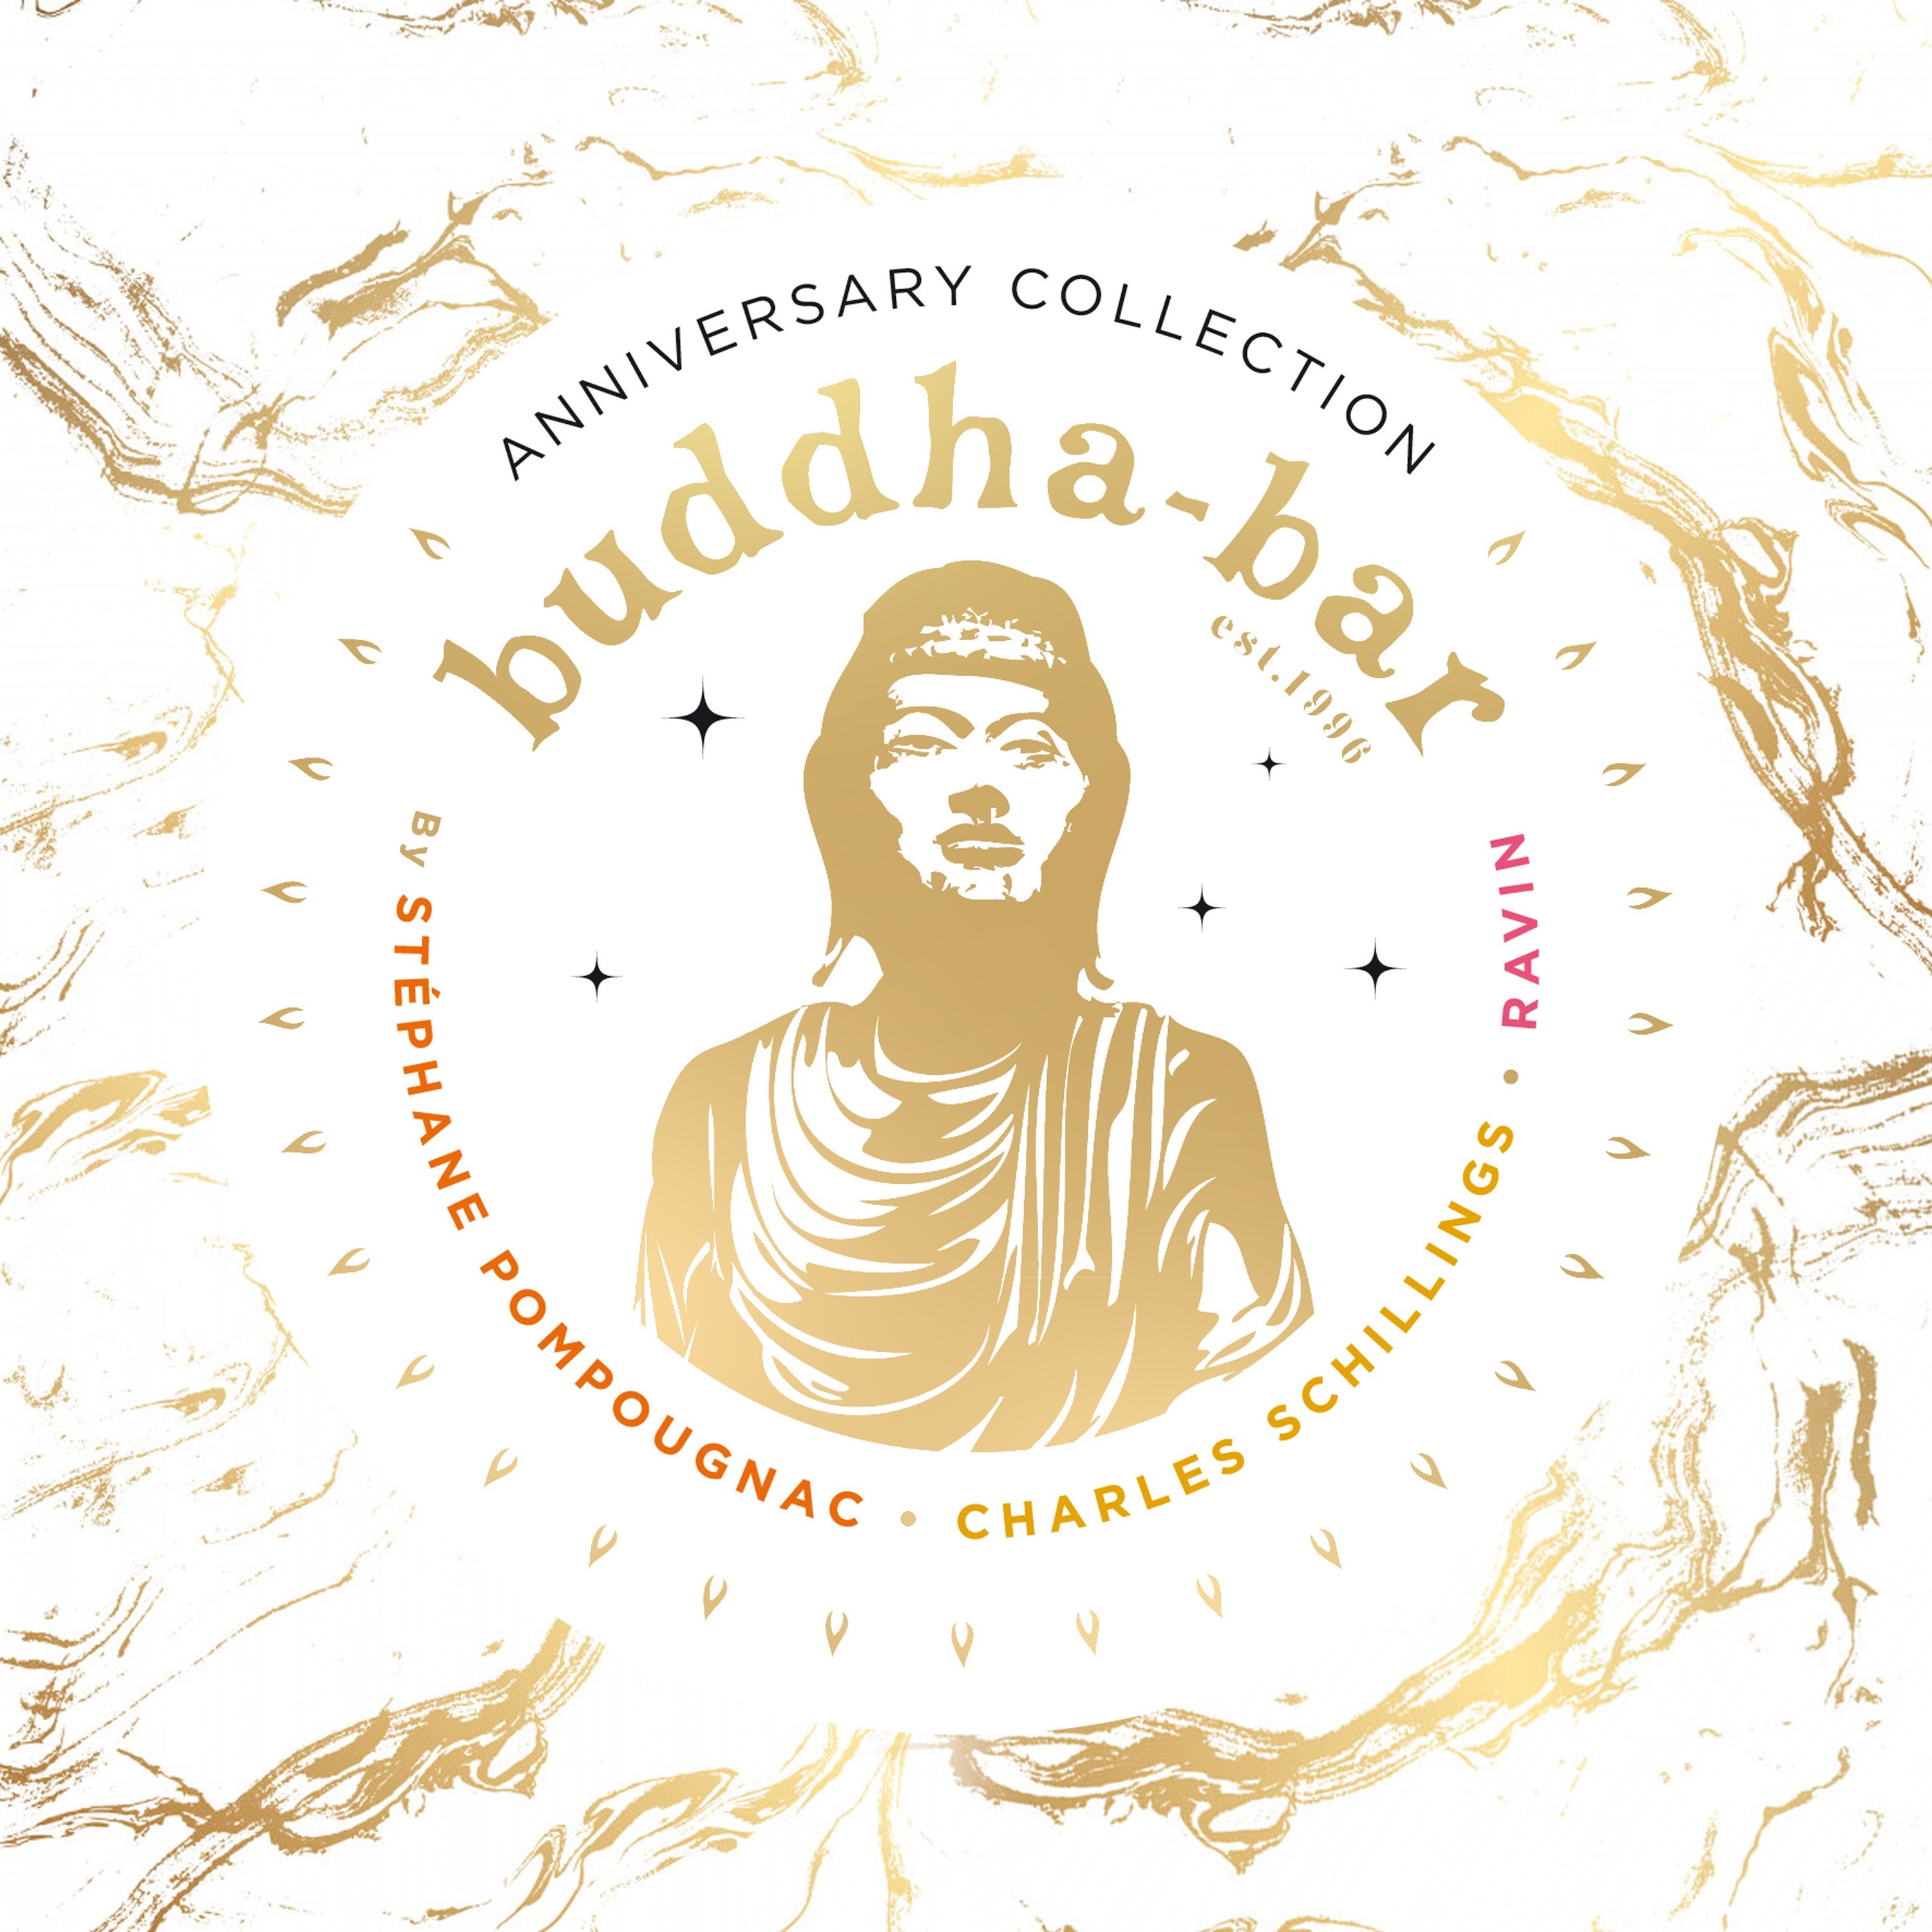 Little Buddha II - Album by Buddha-Bar